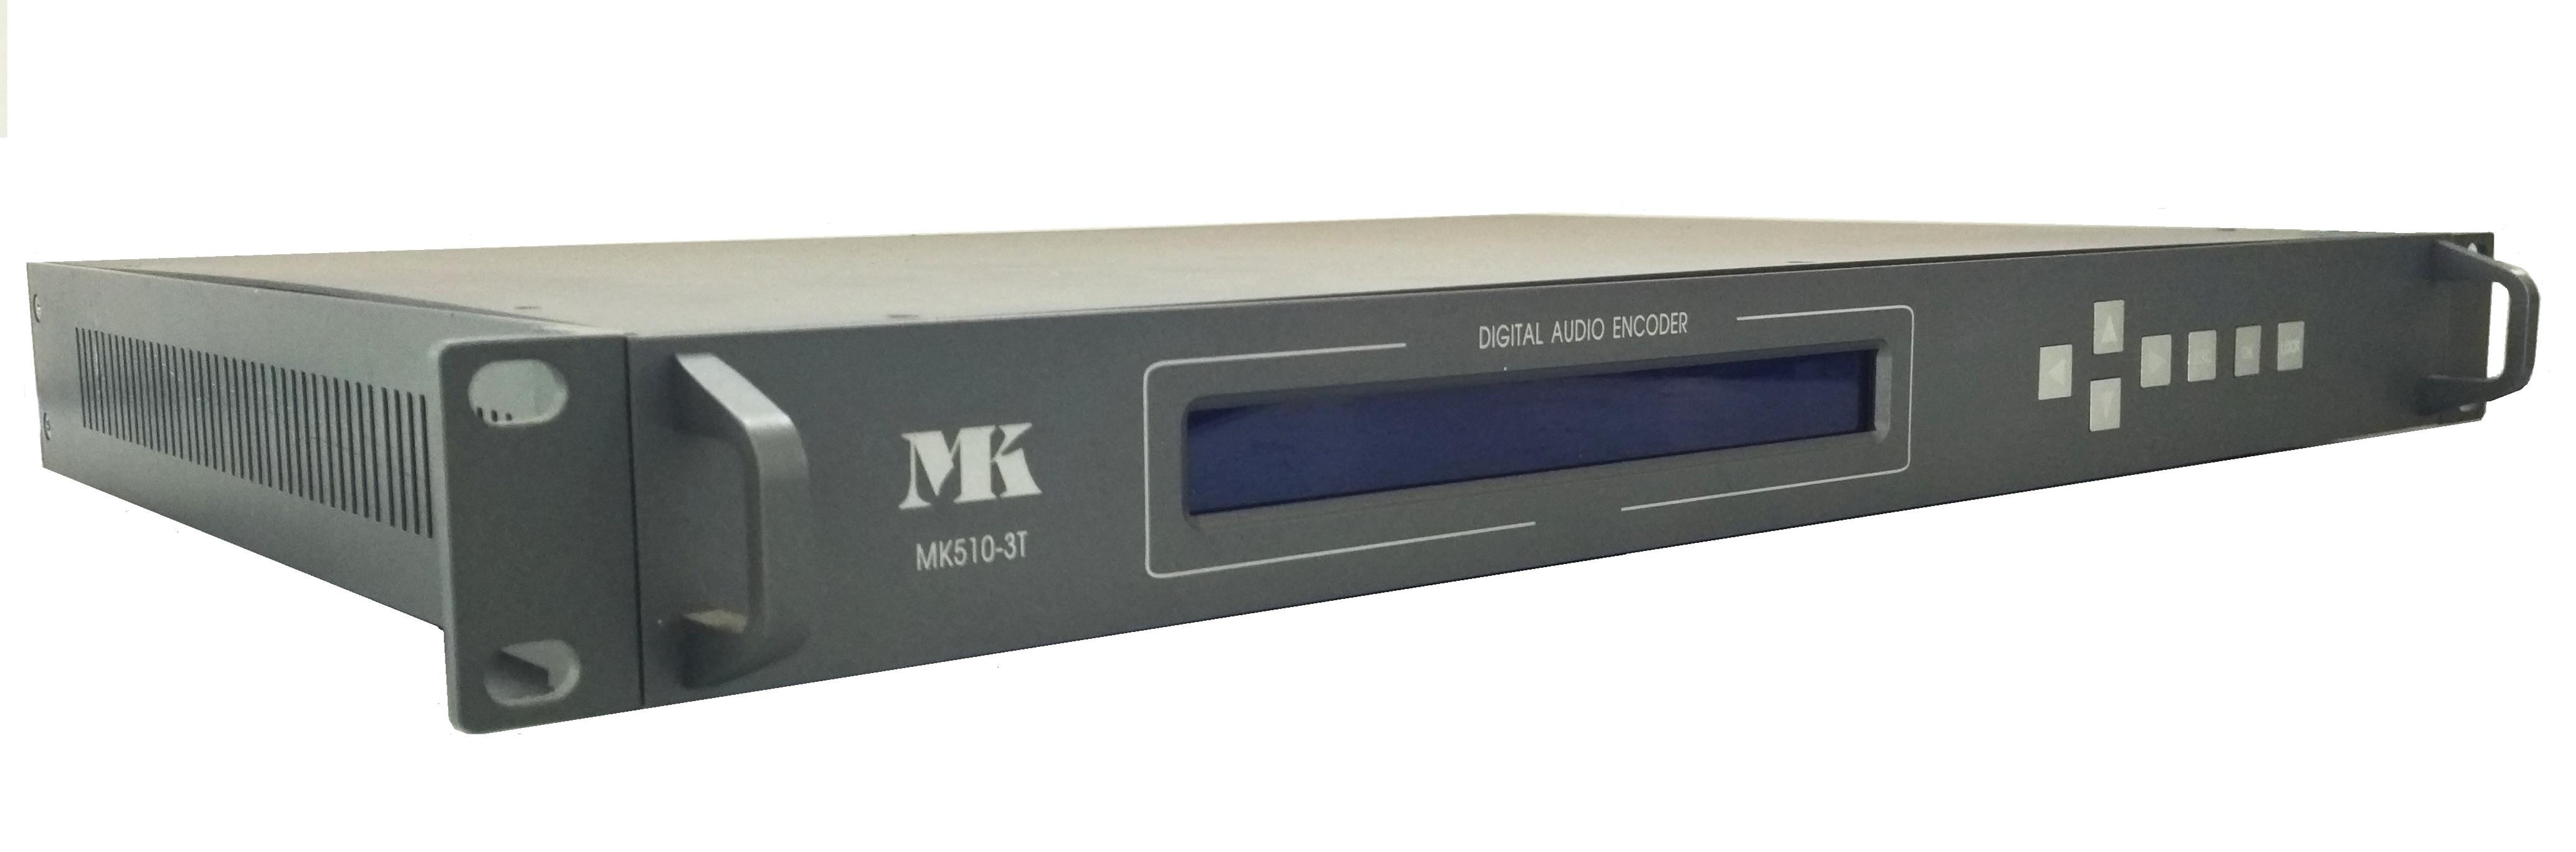 MK510系列多接口数字音频传输设备